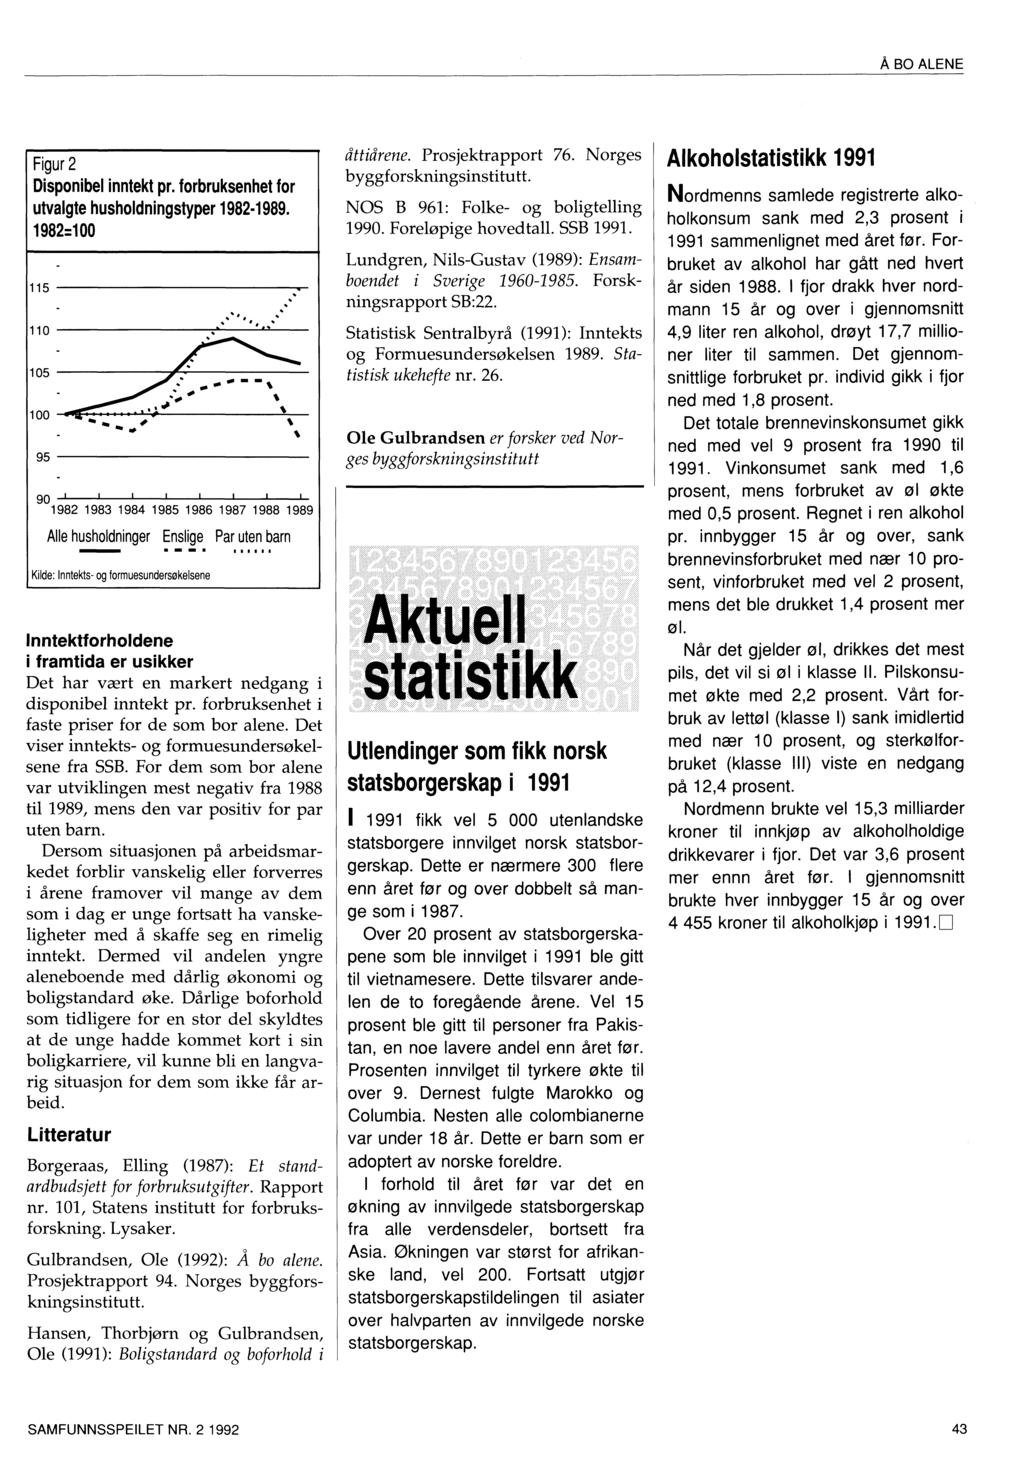 Å BO ALENE Figur 2 Disponibel inntekt pr. forbruksenhet for utvalgte husholdningstyper 1982-1989.